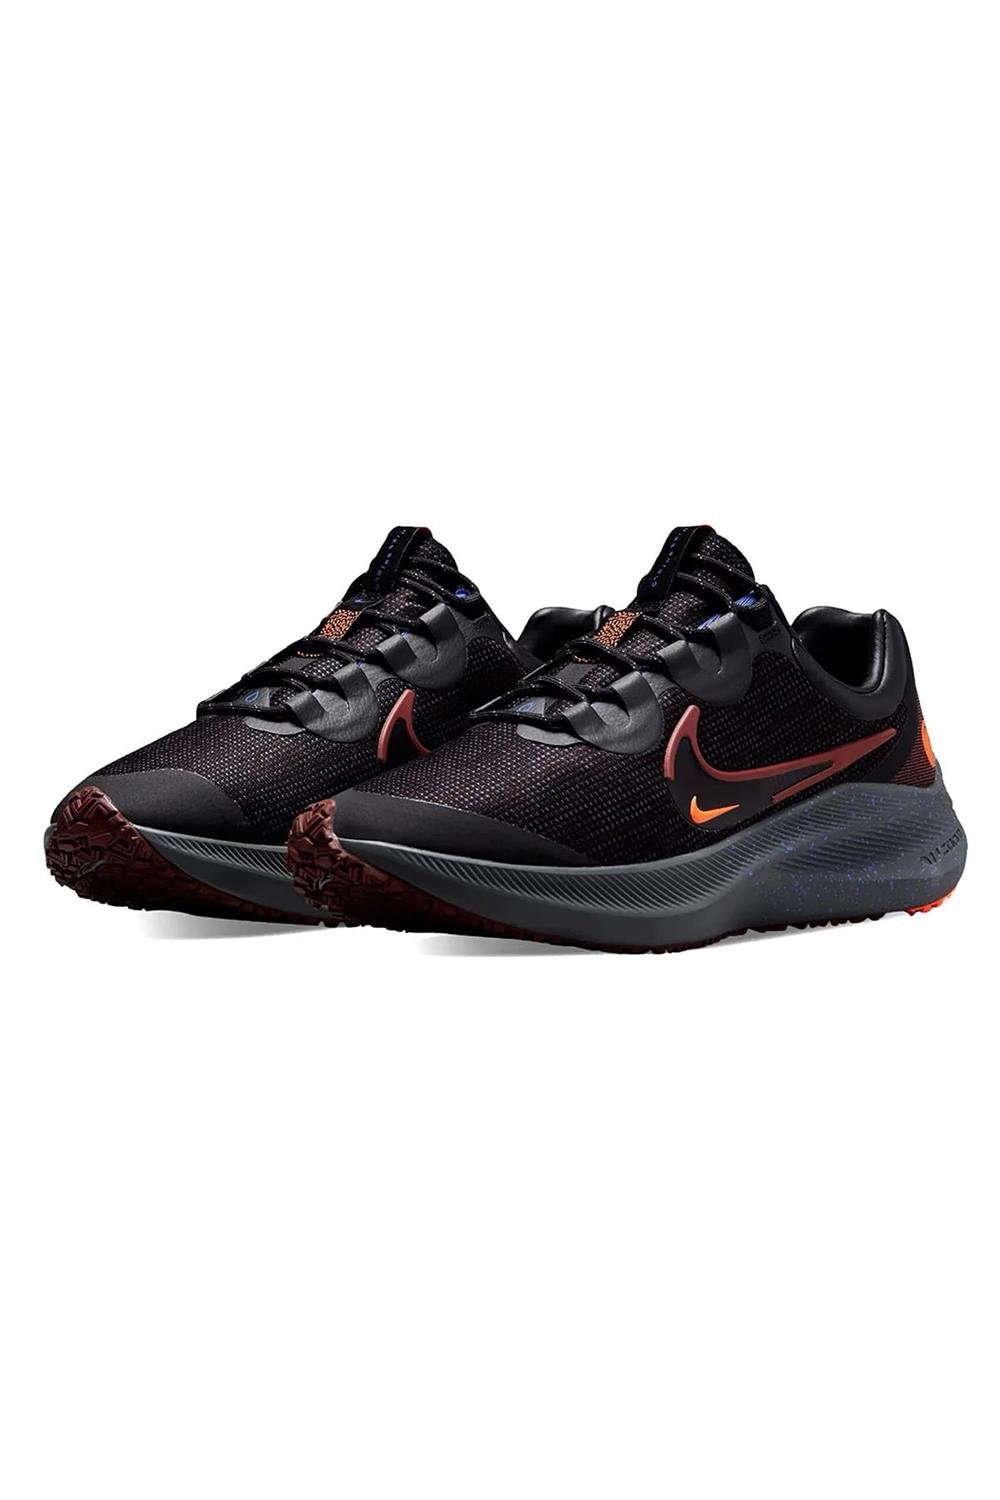 Nike Winflo 8 Shield Erkek Koşu Ayakkabısı Dc3727-200 | Sporborsasi.com